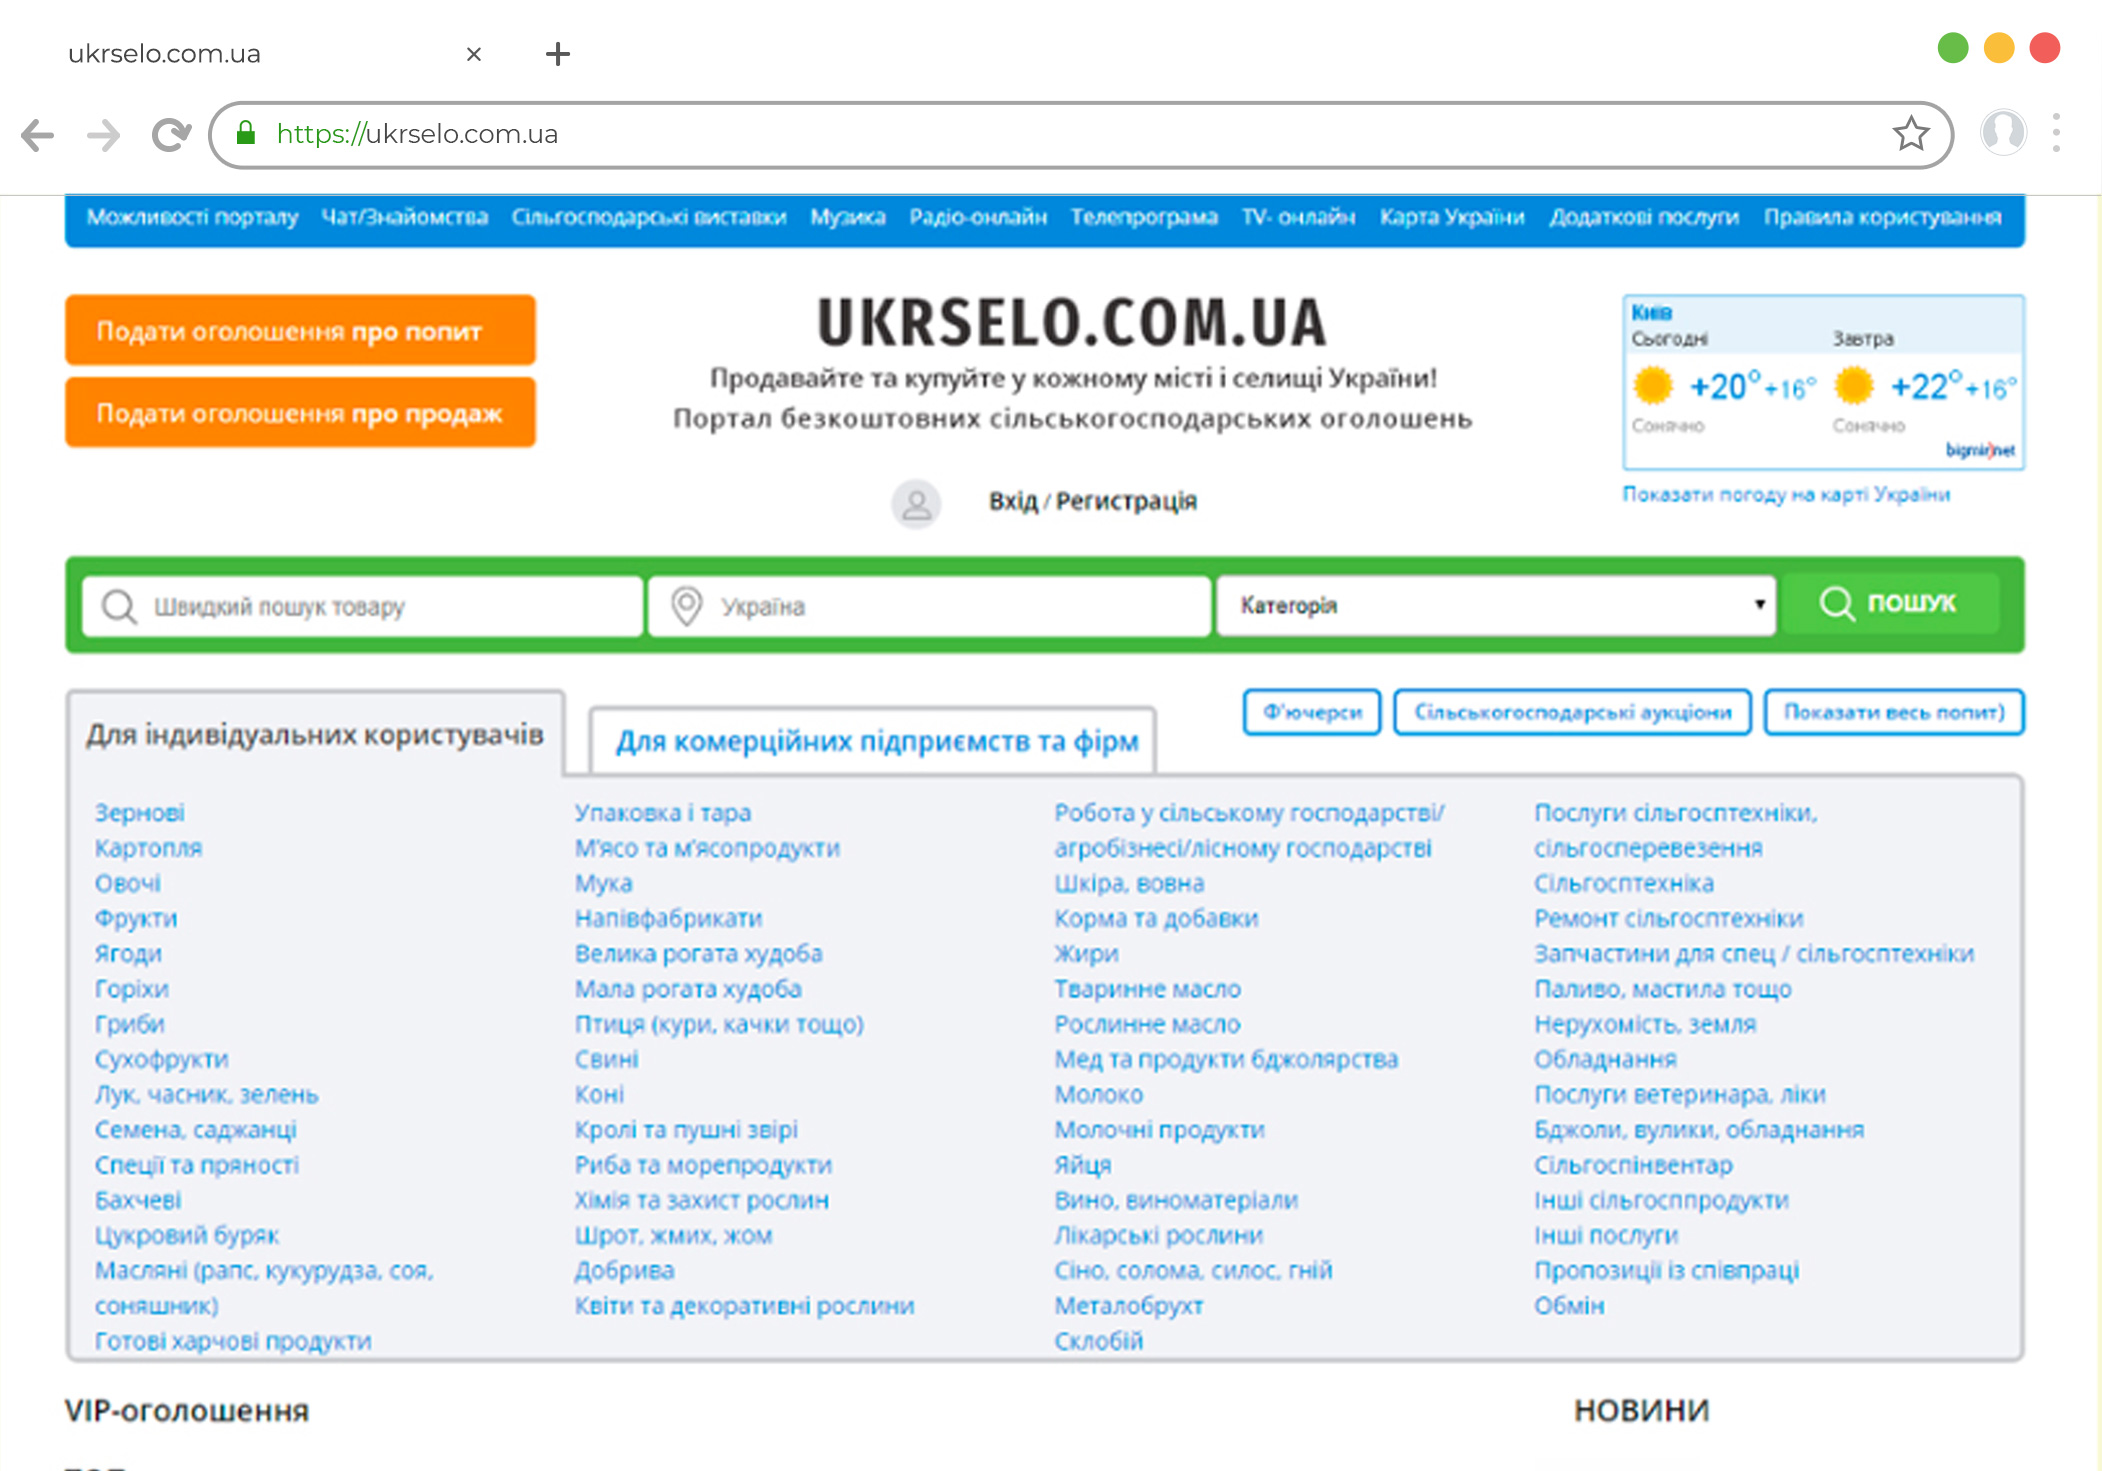 Доработка сайта на WordPress доска объявления ukrselo.com.ua